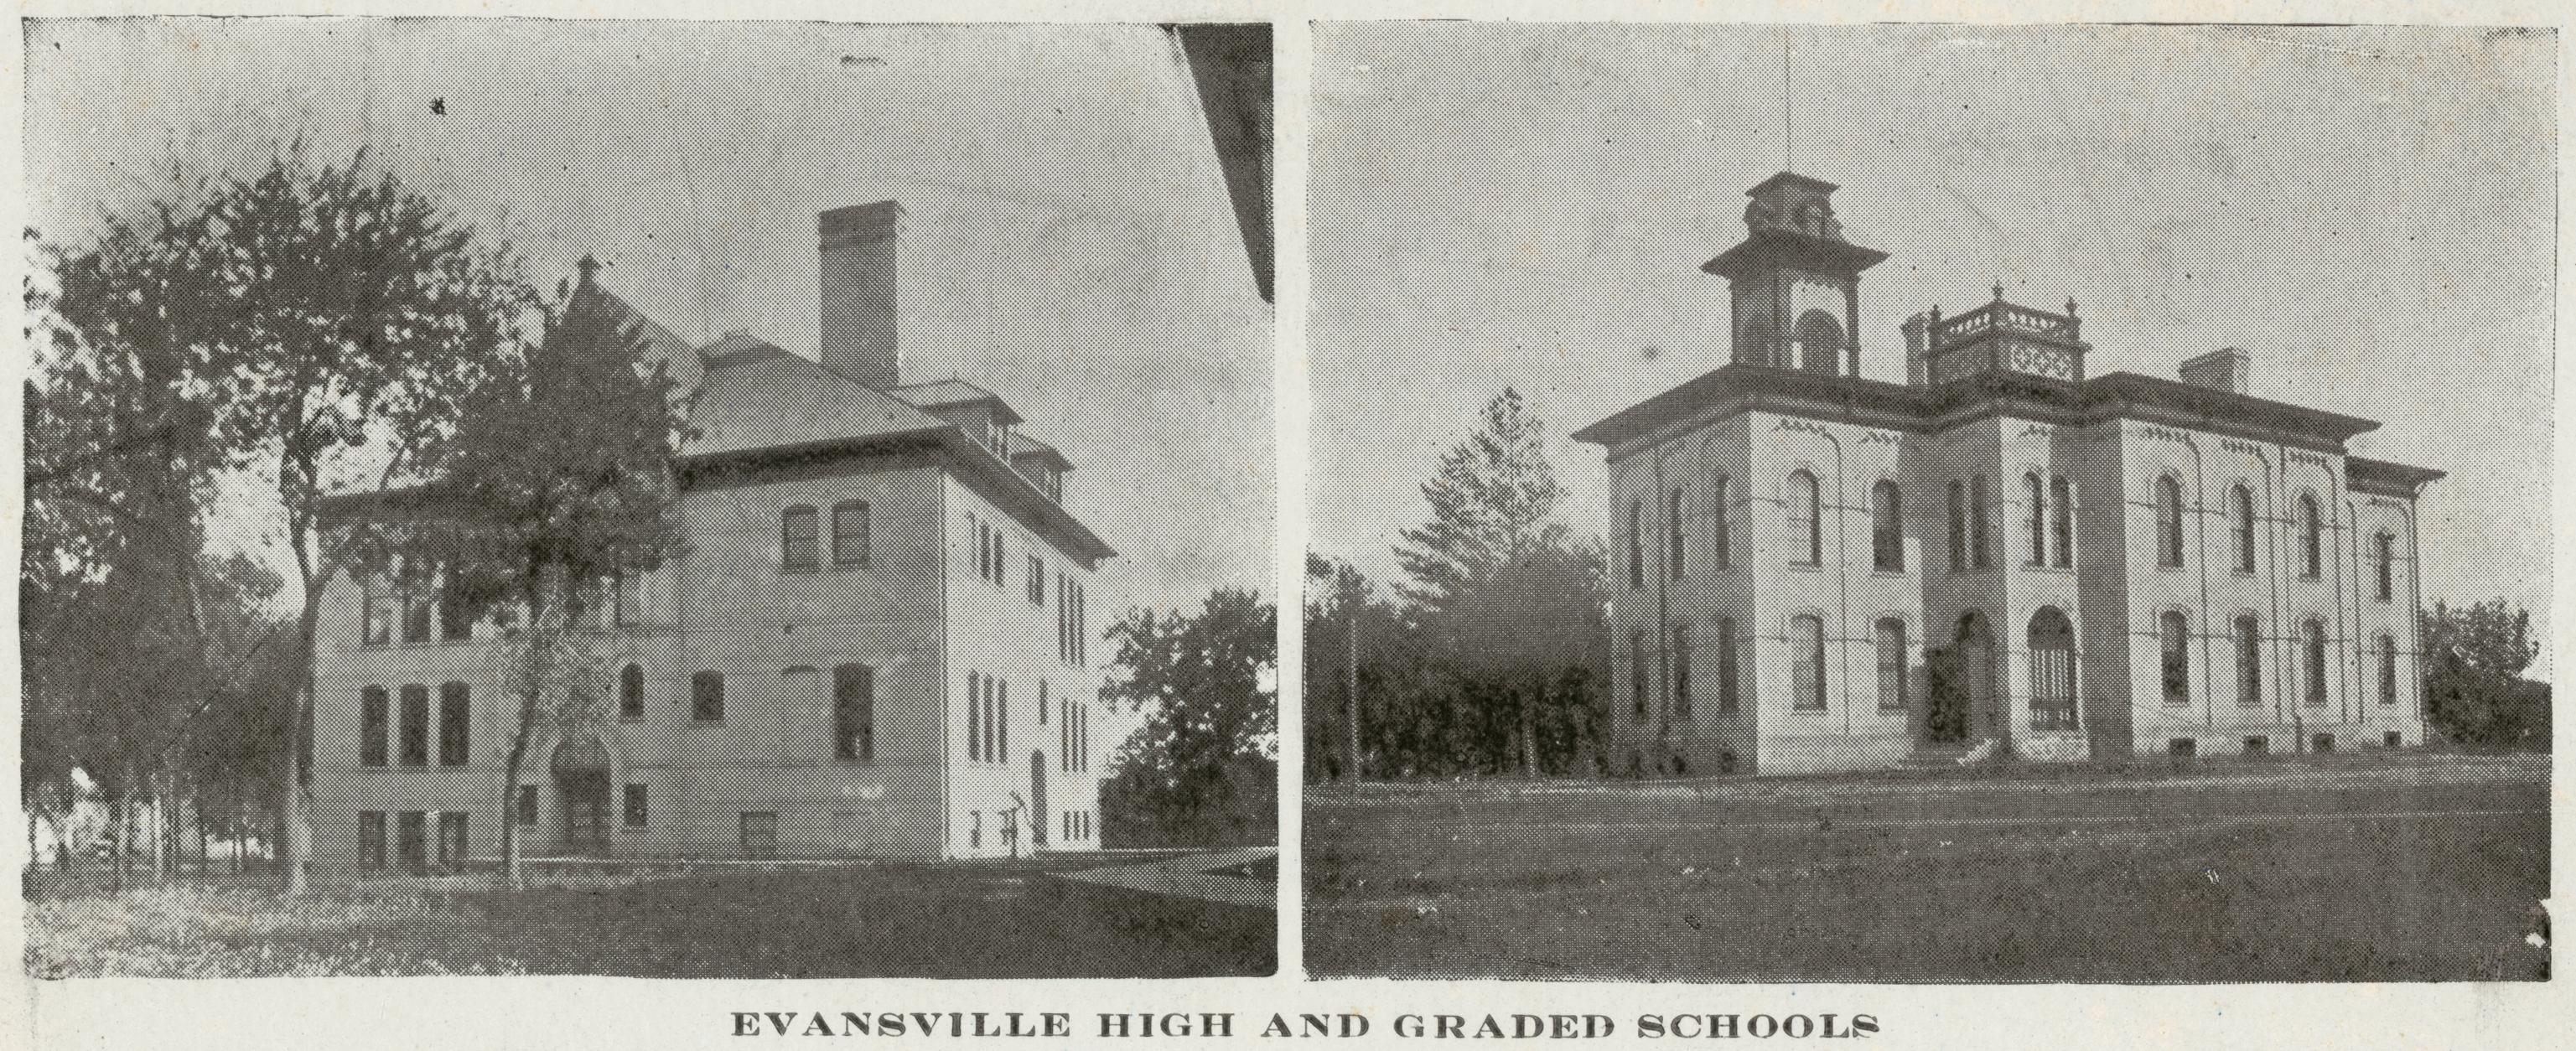 Evansville High School and Graded School, Evansville, Wisconsin